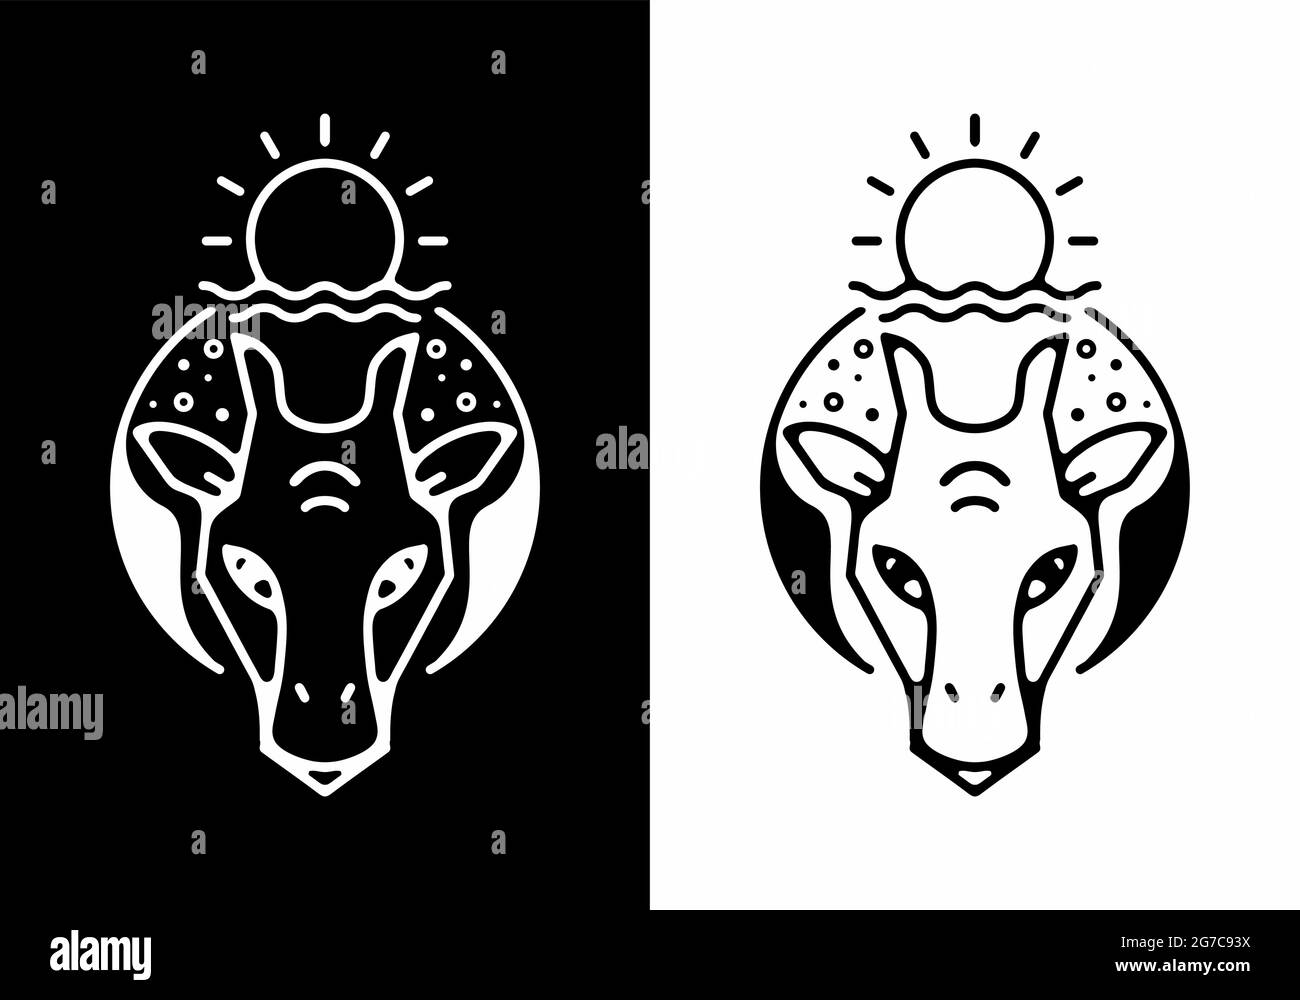 Black and white line art of giraffe head design Stock Vector